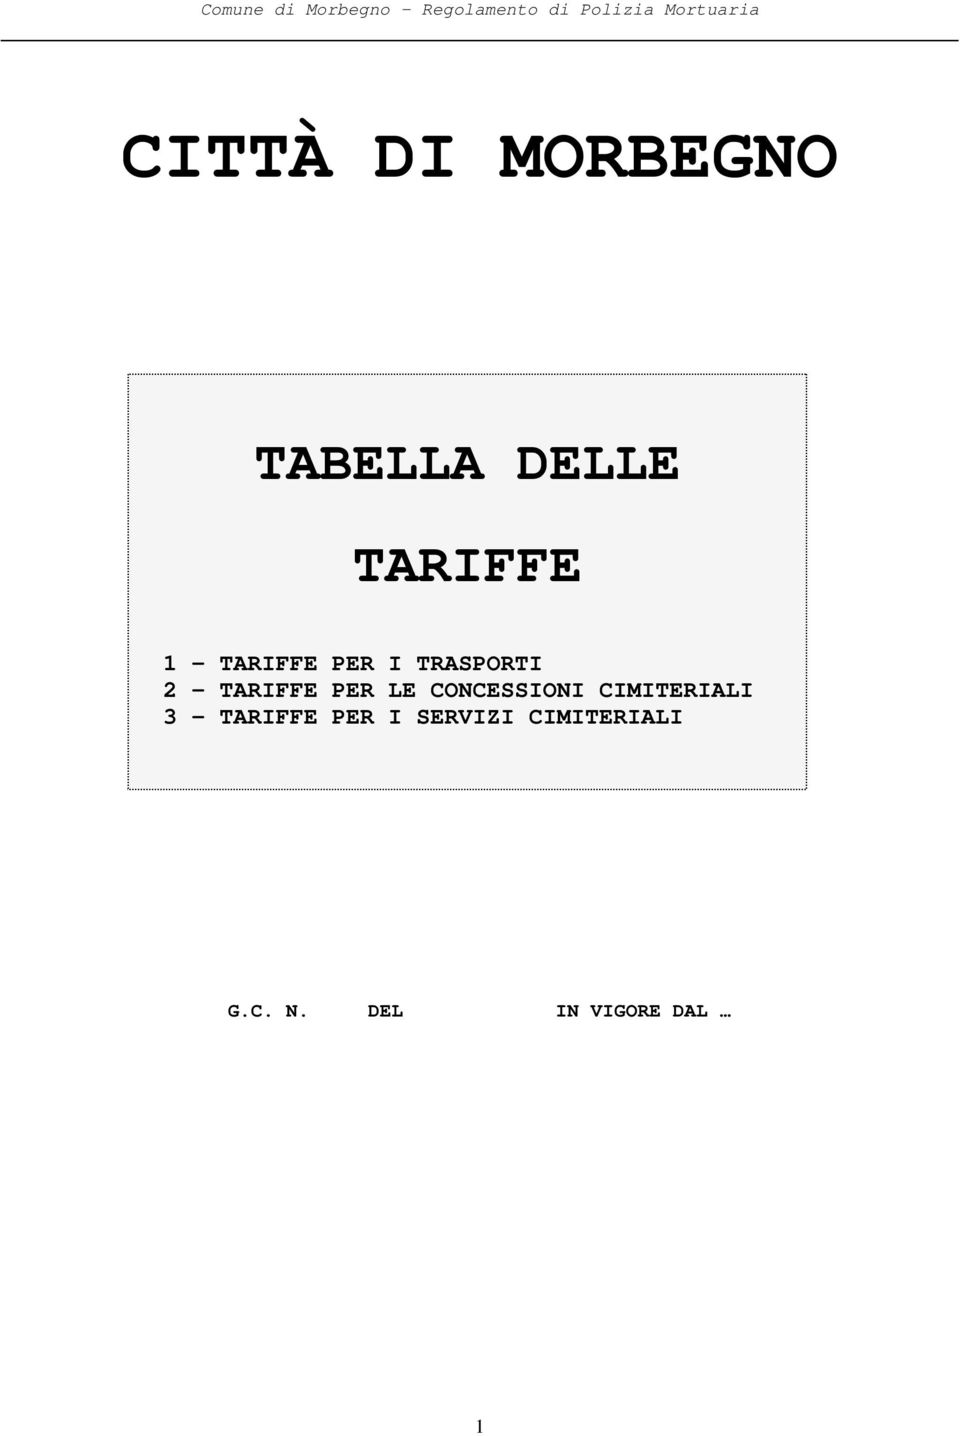 TRASPORTI 2 - TARIFFE PER LE CONCESSIONI CIMITERIALI 3 -